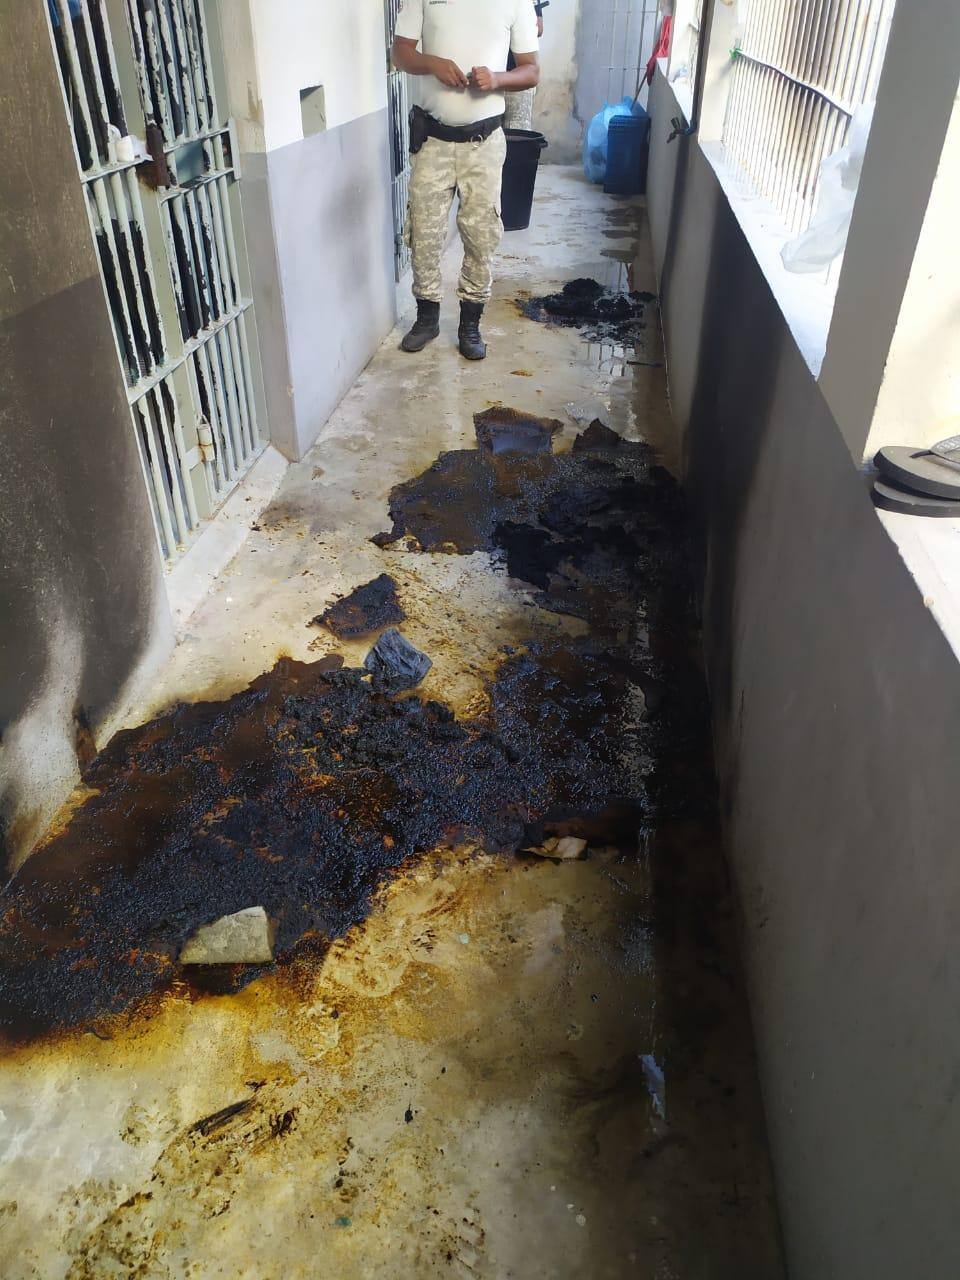 Em Janaúba, presos queimaram colchões em celas